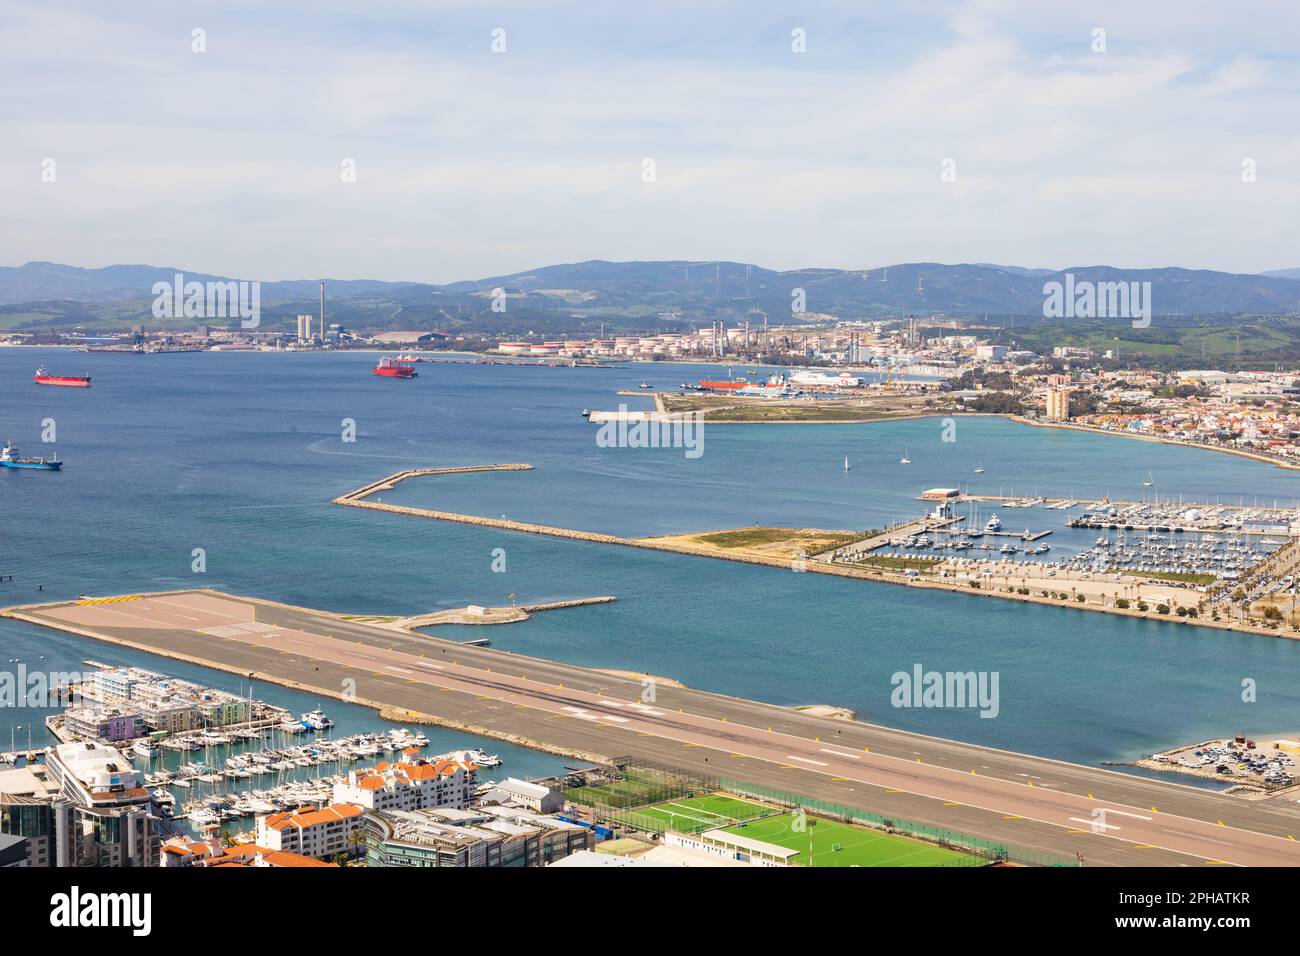 Pista dell'aeroporto di Gibilterra che si estende fino al mare. Il territorio britannico d'oltremare di Gibilterra, la roccia di Gibilterra sulla penisola iberica. Foto Stock